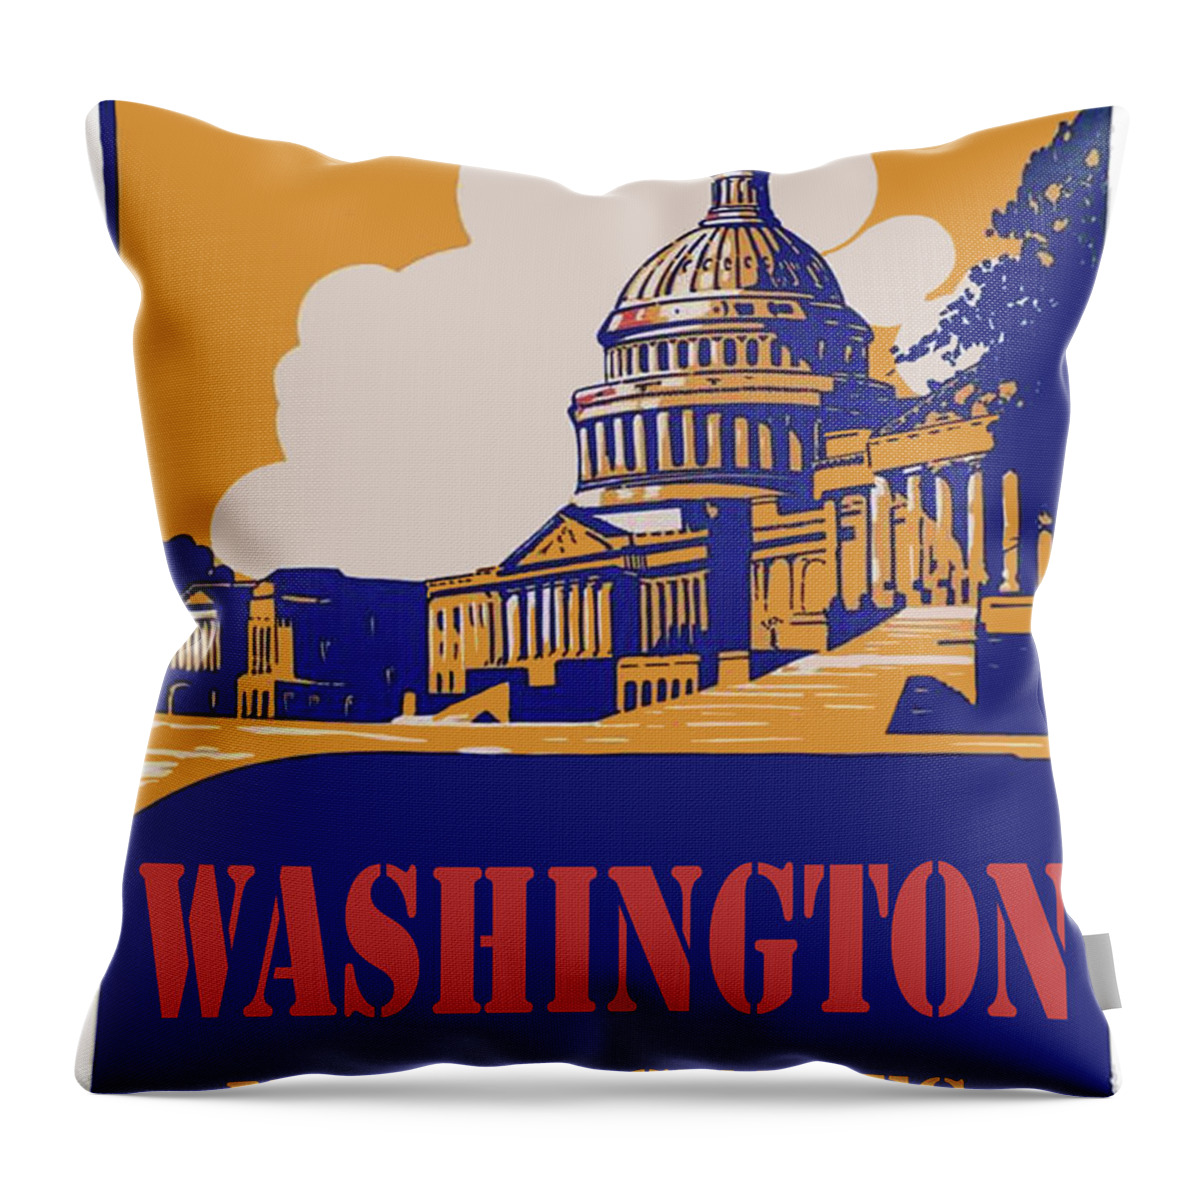 Washington Throw Pillow featuring the digital art Washington DC by Long Shot